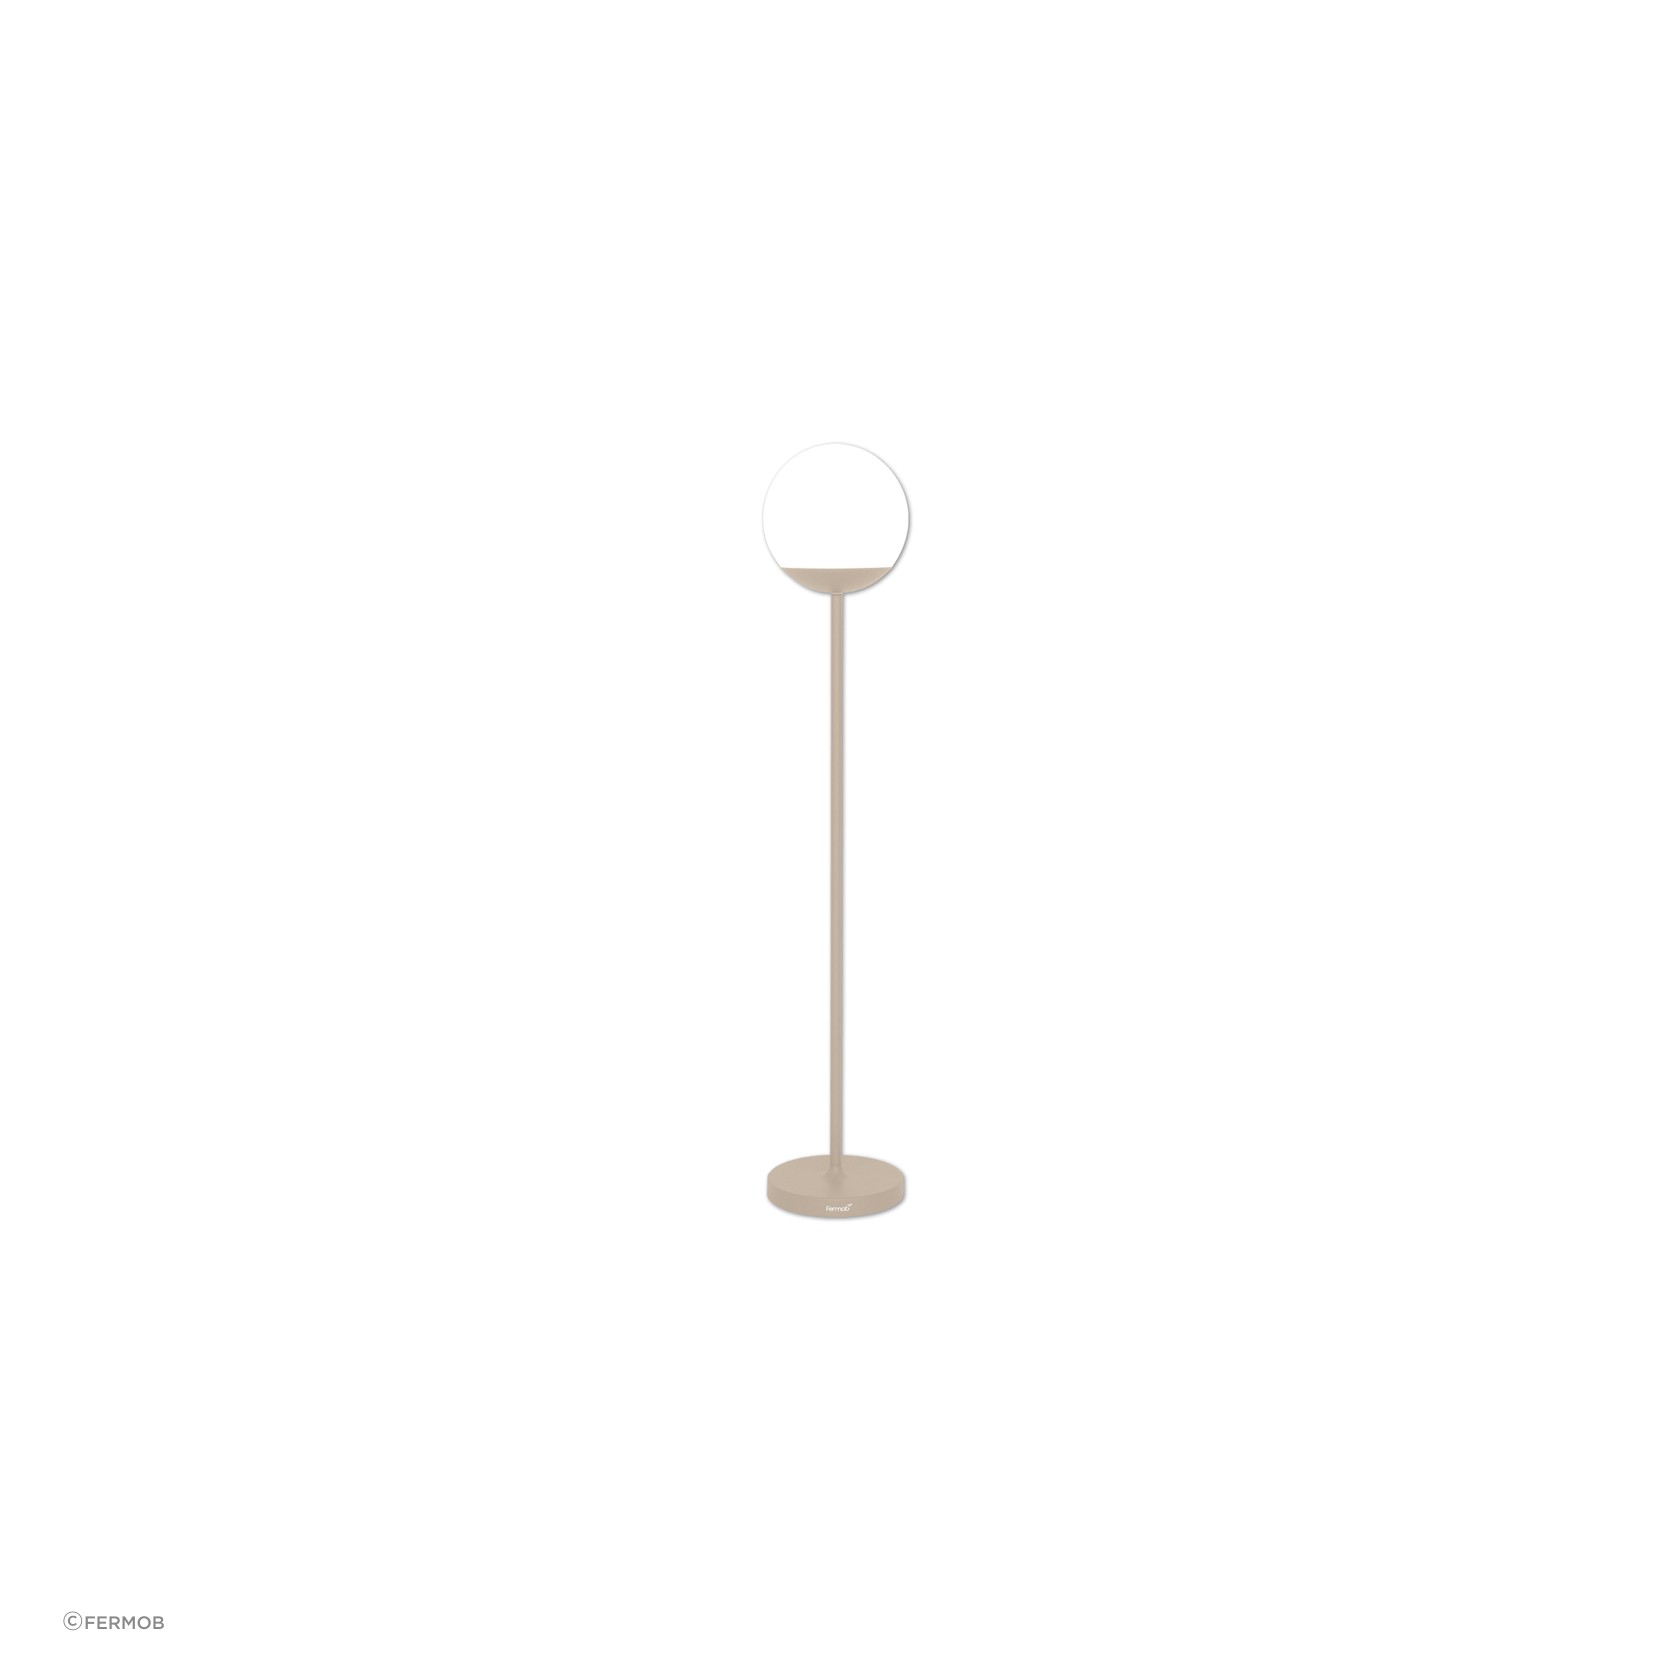 Mooon! Floor Lamp 134 cm by Fermob gallery detail image